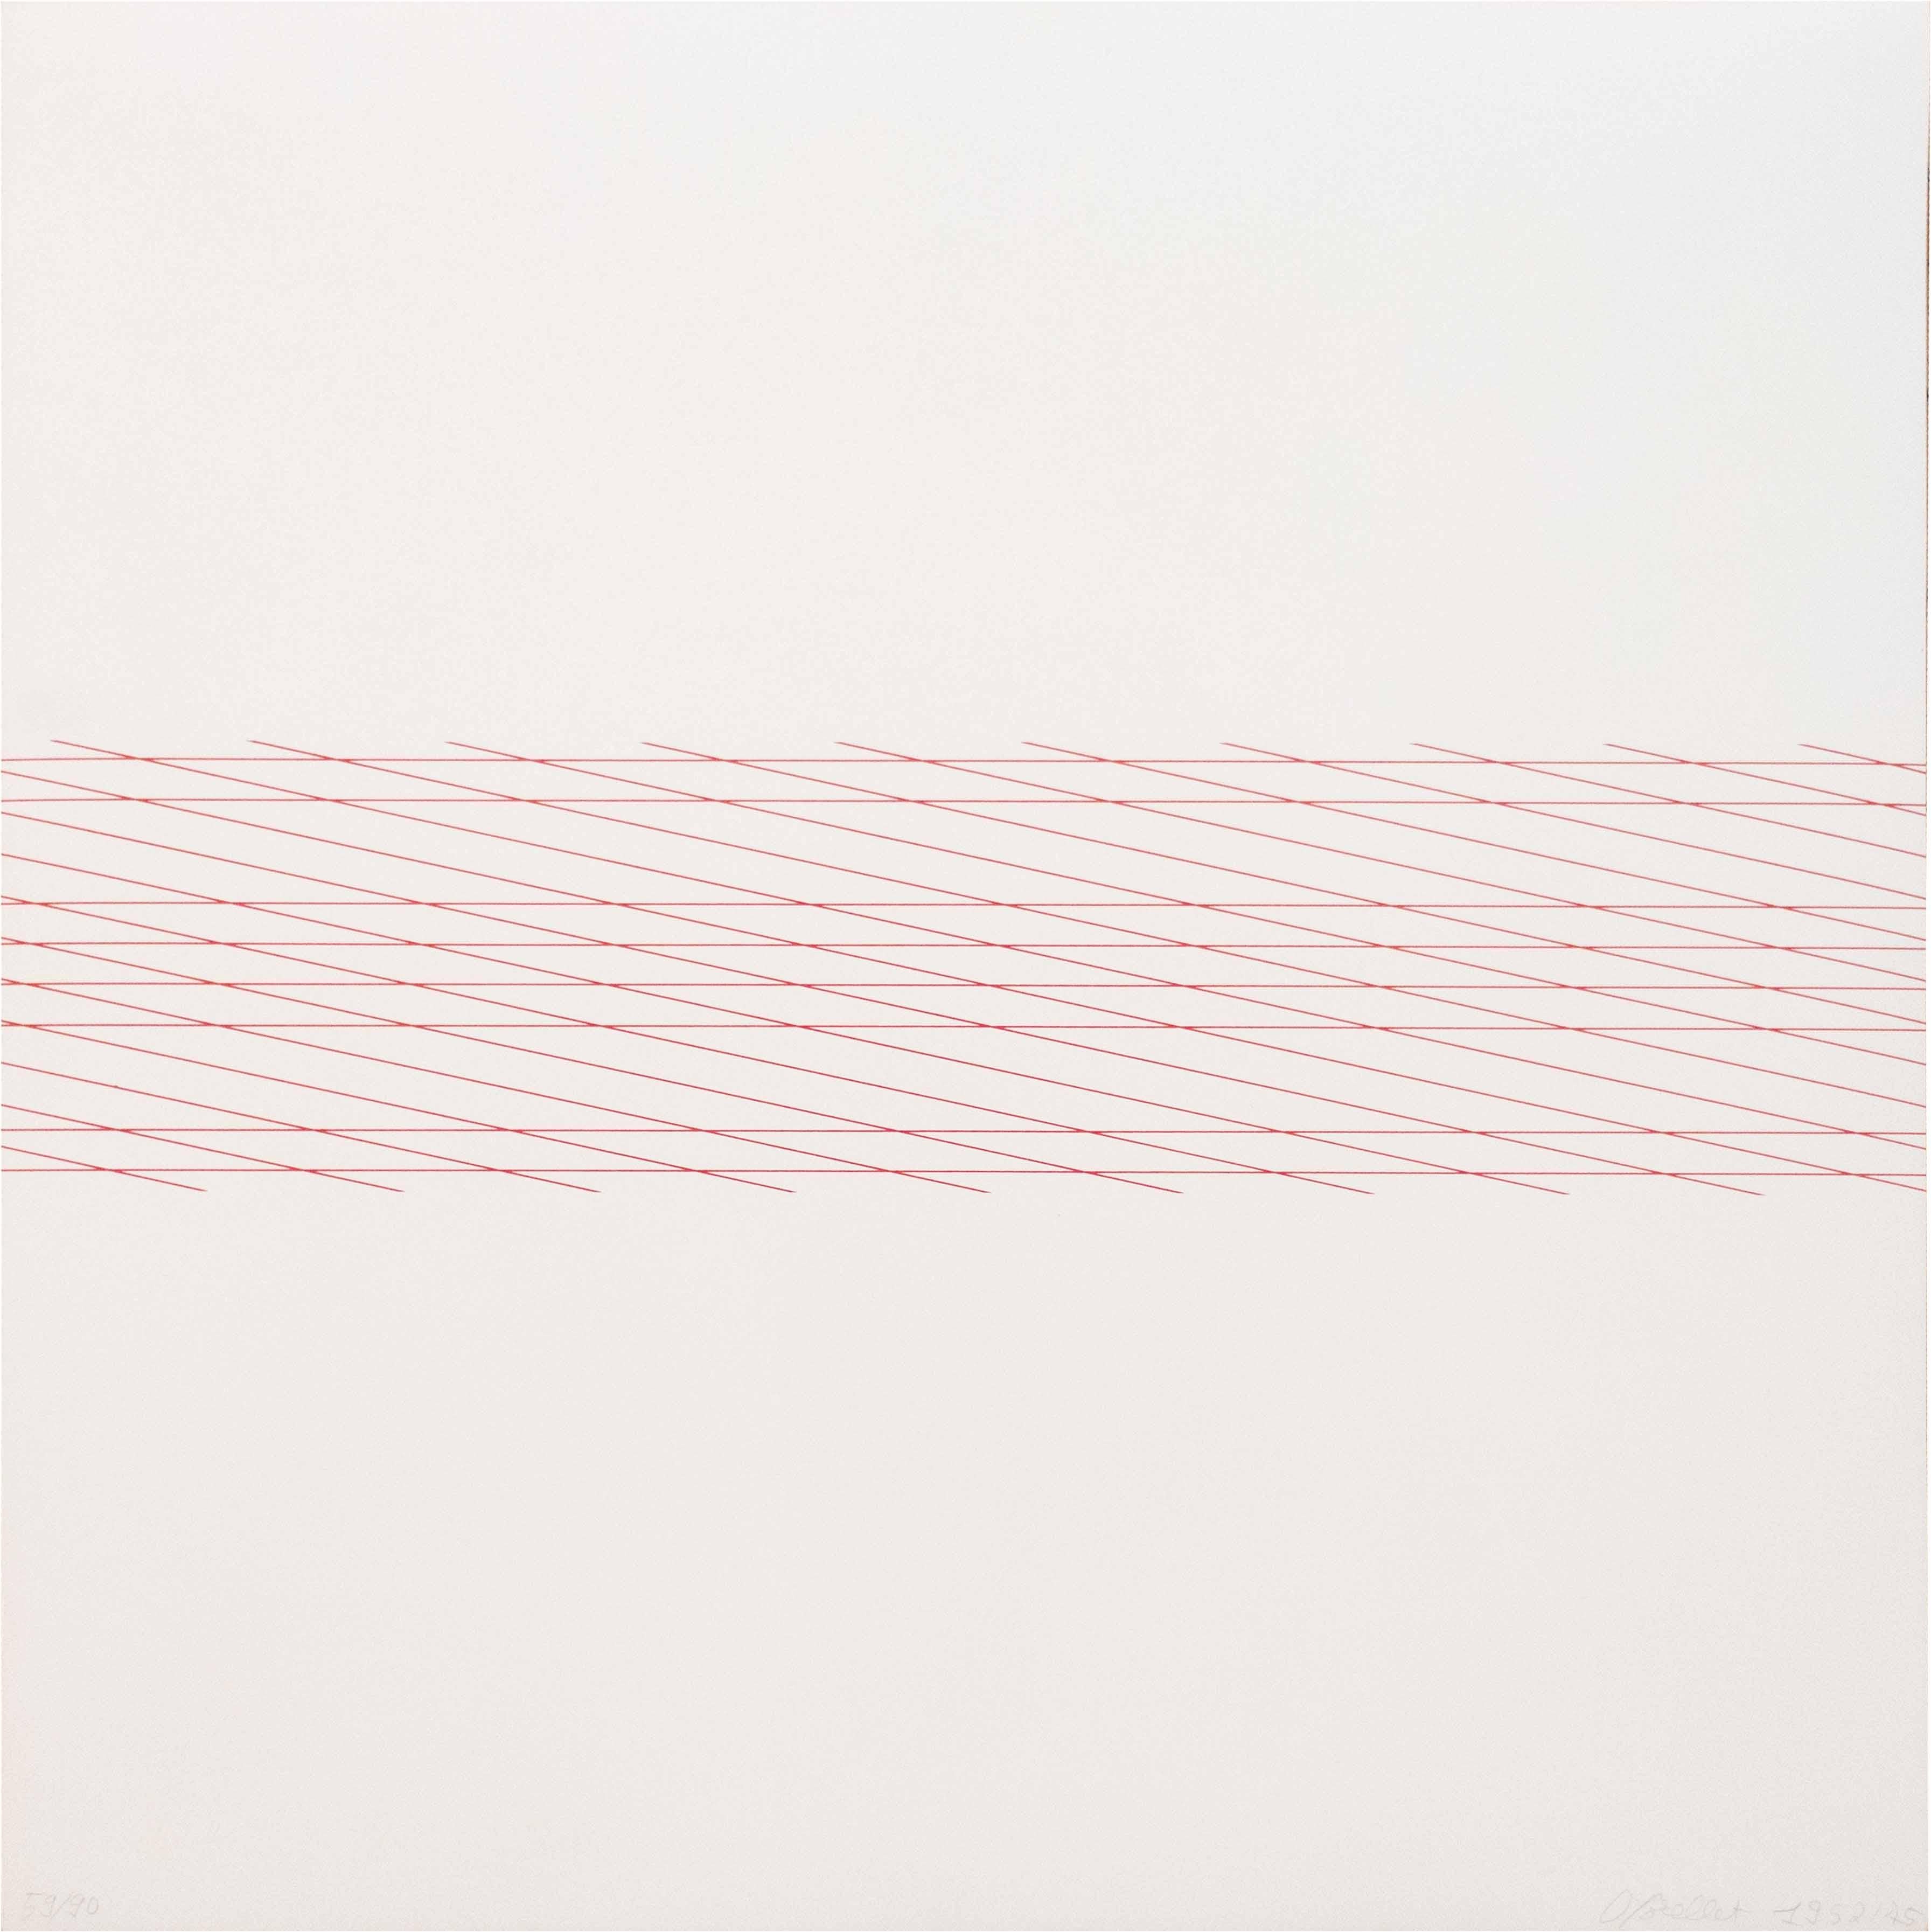 Francois Morellet Abstract Print - Trame, 1957-1975, Serigrafia, Astrazione geometrica, Bianco, Rosso